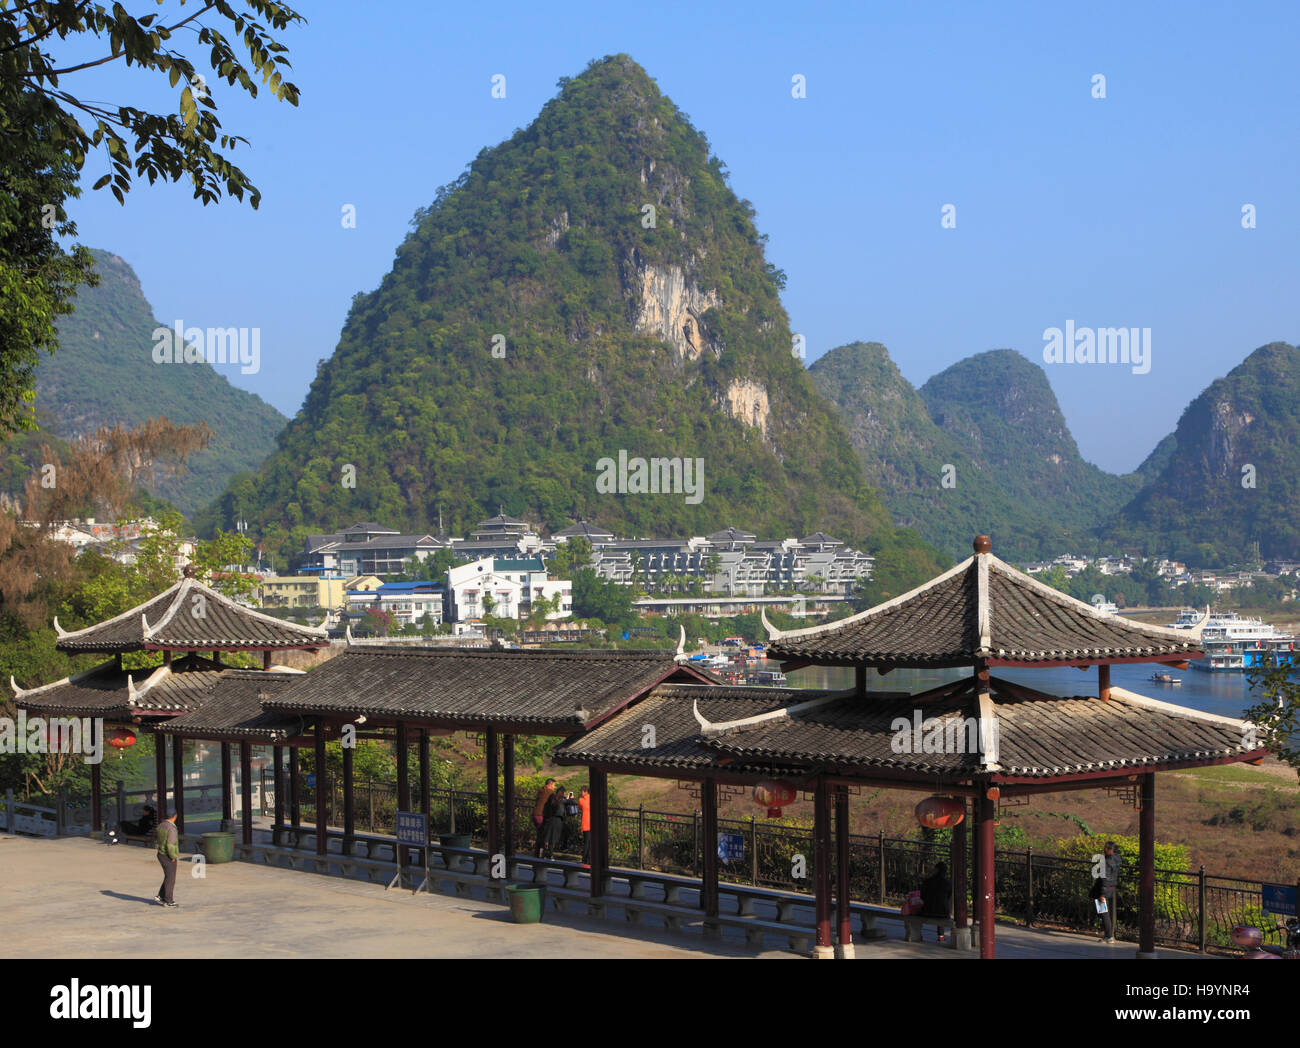 China, Guangxi, Yangshuo, Li River, town, scenery, Stock Photo